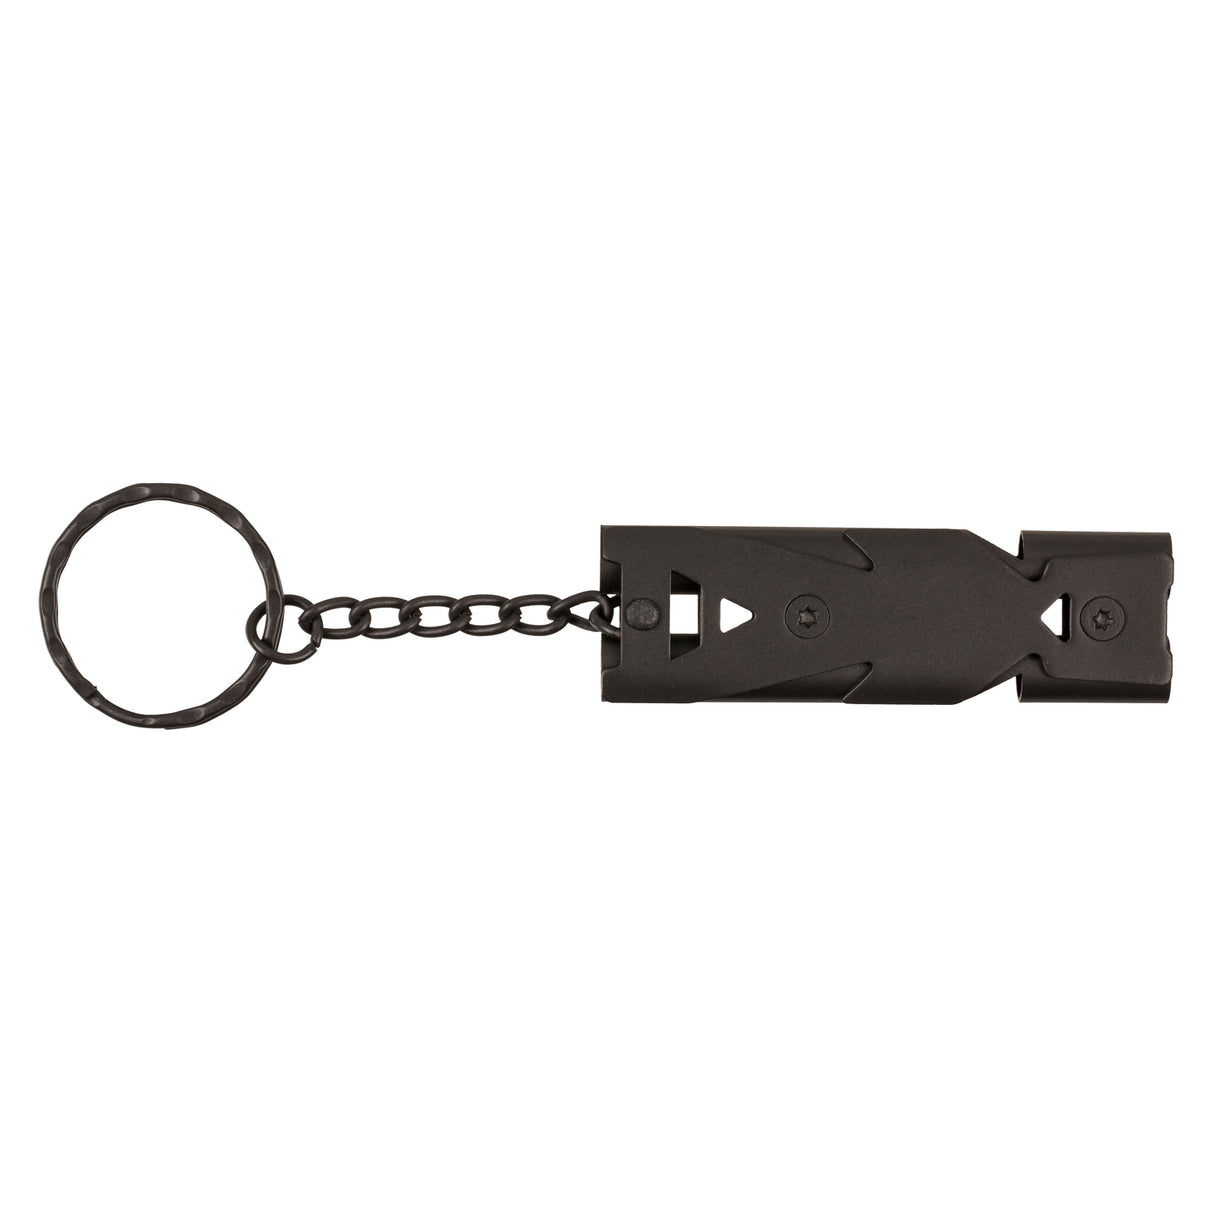 Notfall-Pfeife Schlüsselanhänger in silber oder grau